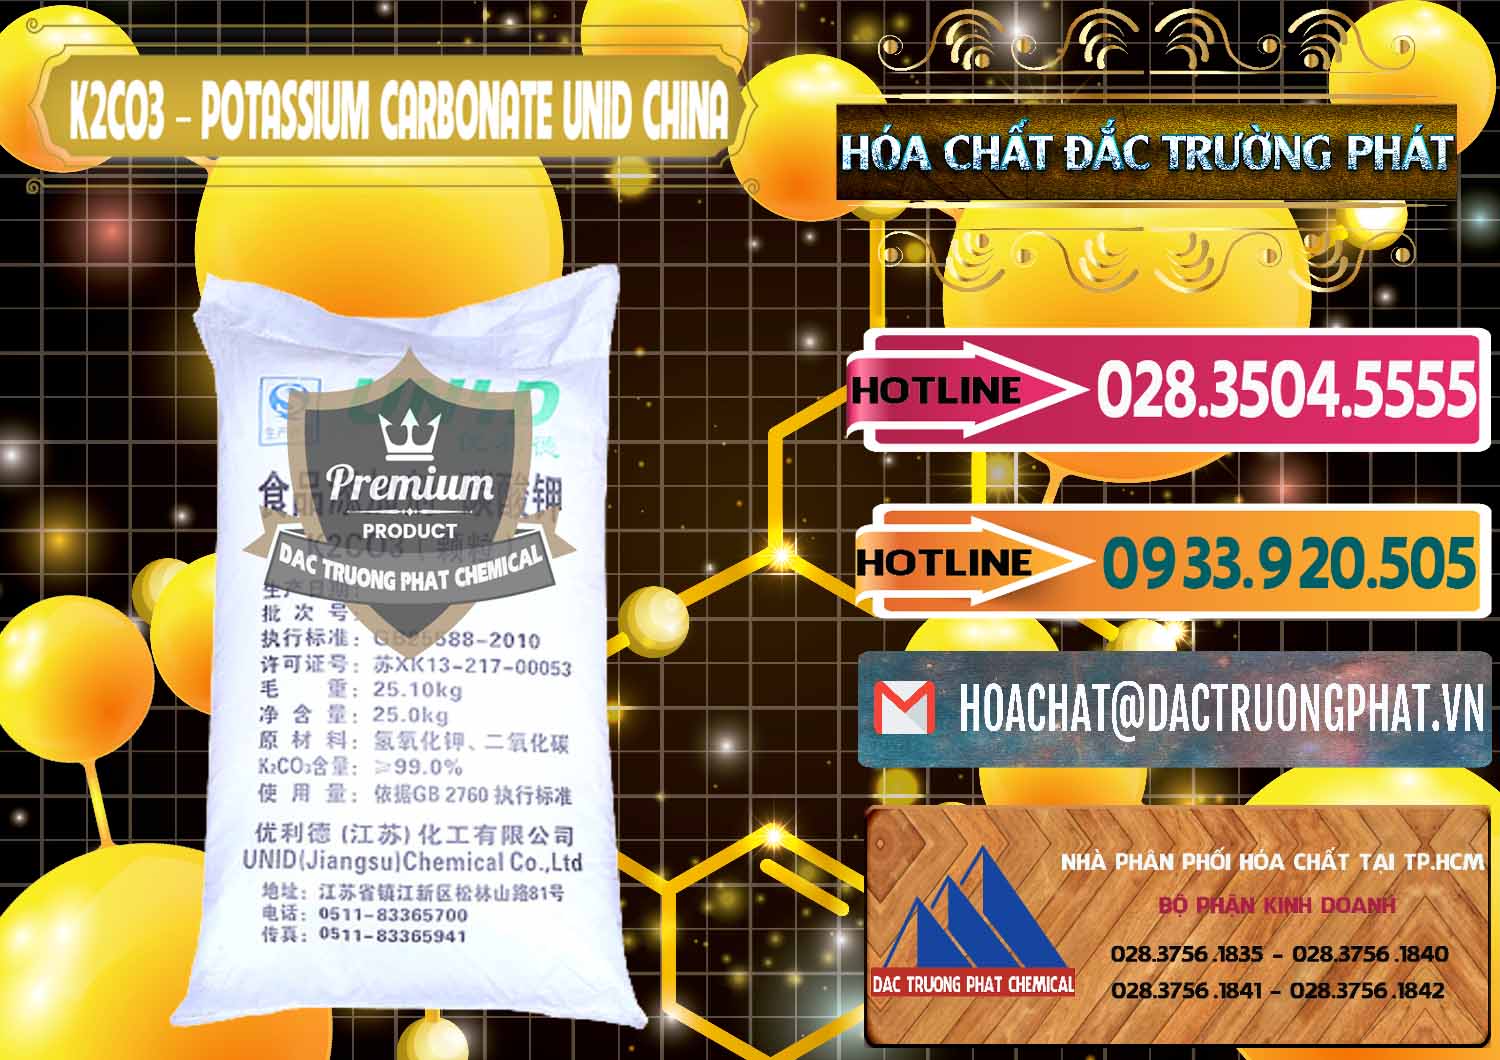 Cty phân phối và bán K2Co3 – Potassium Carbonate UNID Trung Quốc China - 0475 - Cty chuyên kinh doanh & cung cấp hóa chất tại TP.HCM - dactruongphat.vn